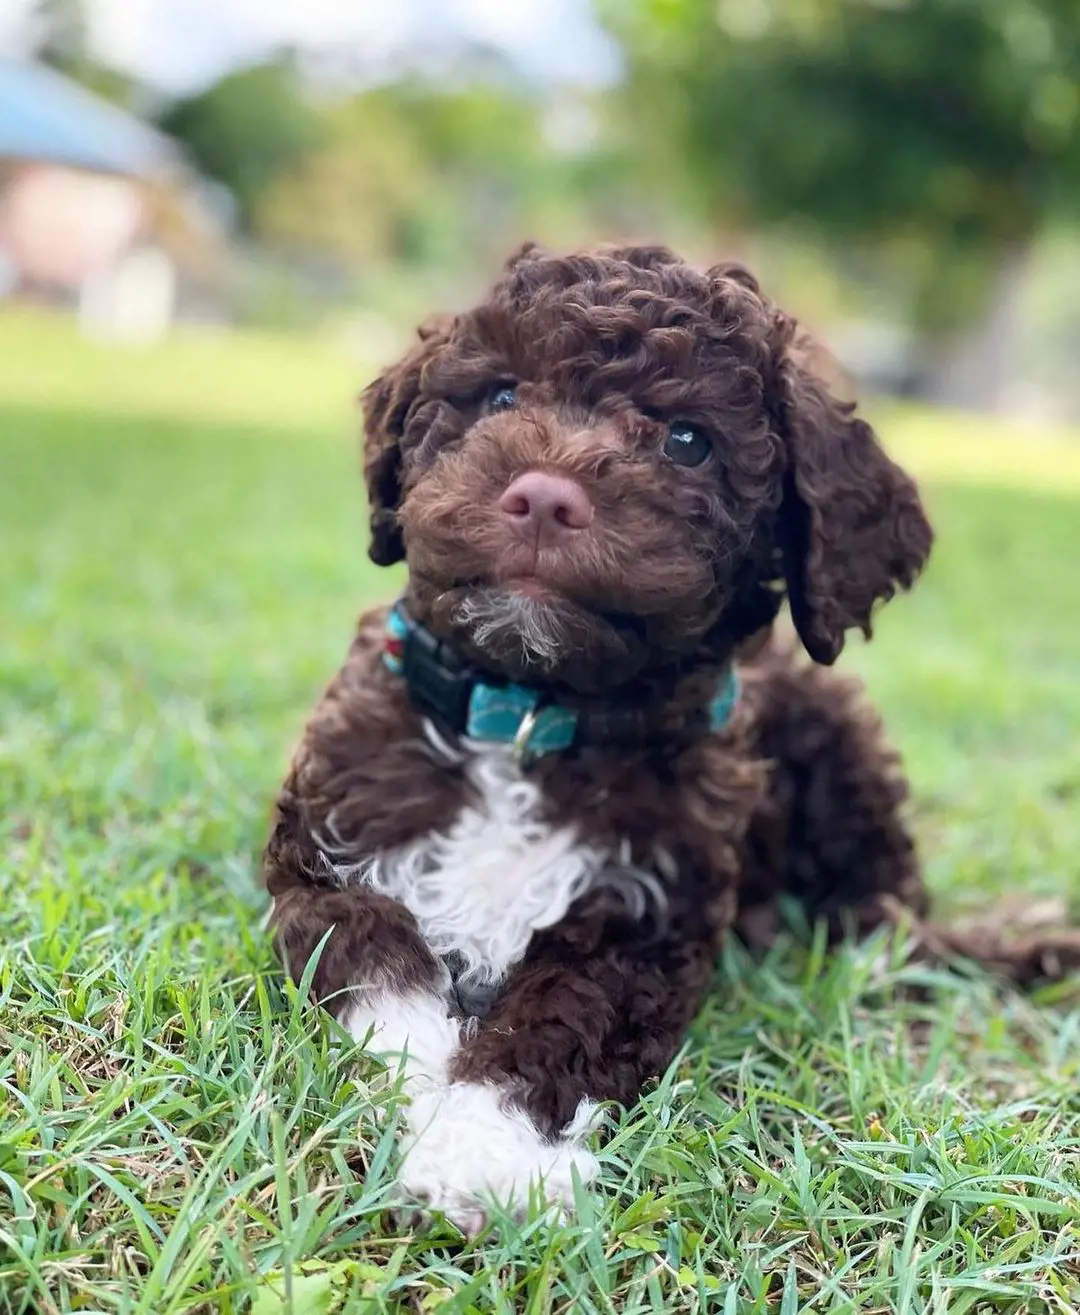 A cute brown furred Lagotto Romagnolo puppy